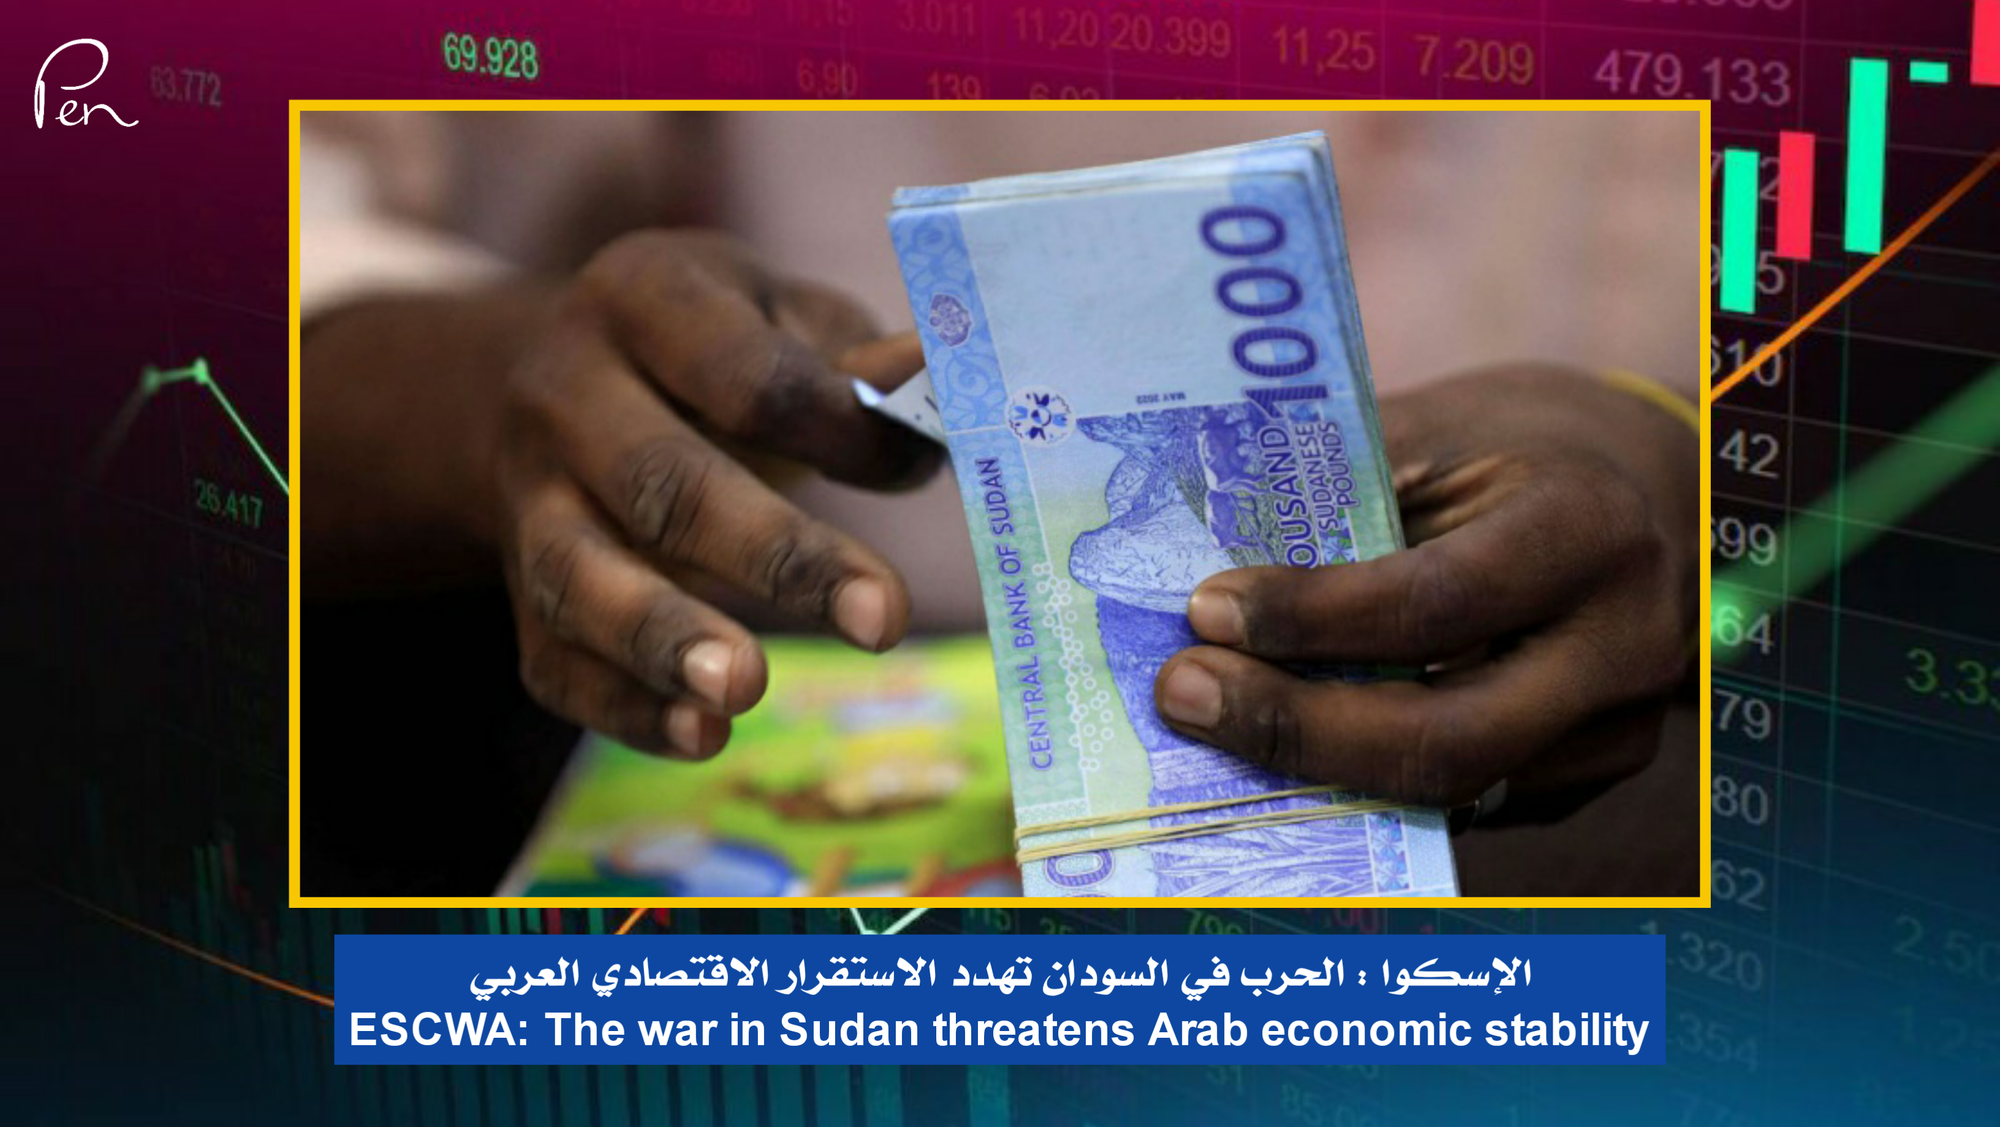 الإسكوا : الحرب في السودان تهدد الاستقرار الاقتصادي العربي